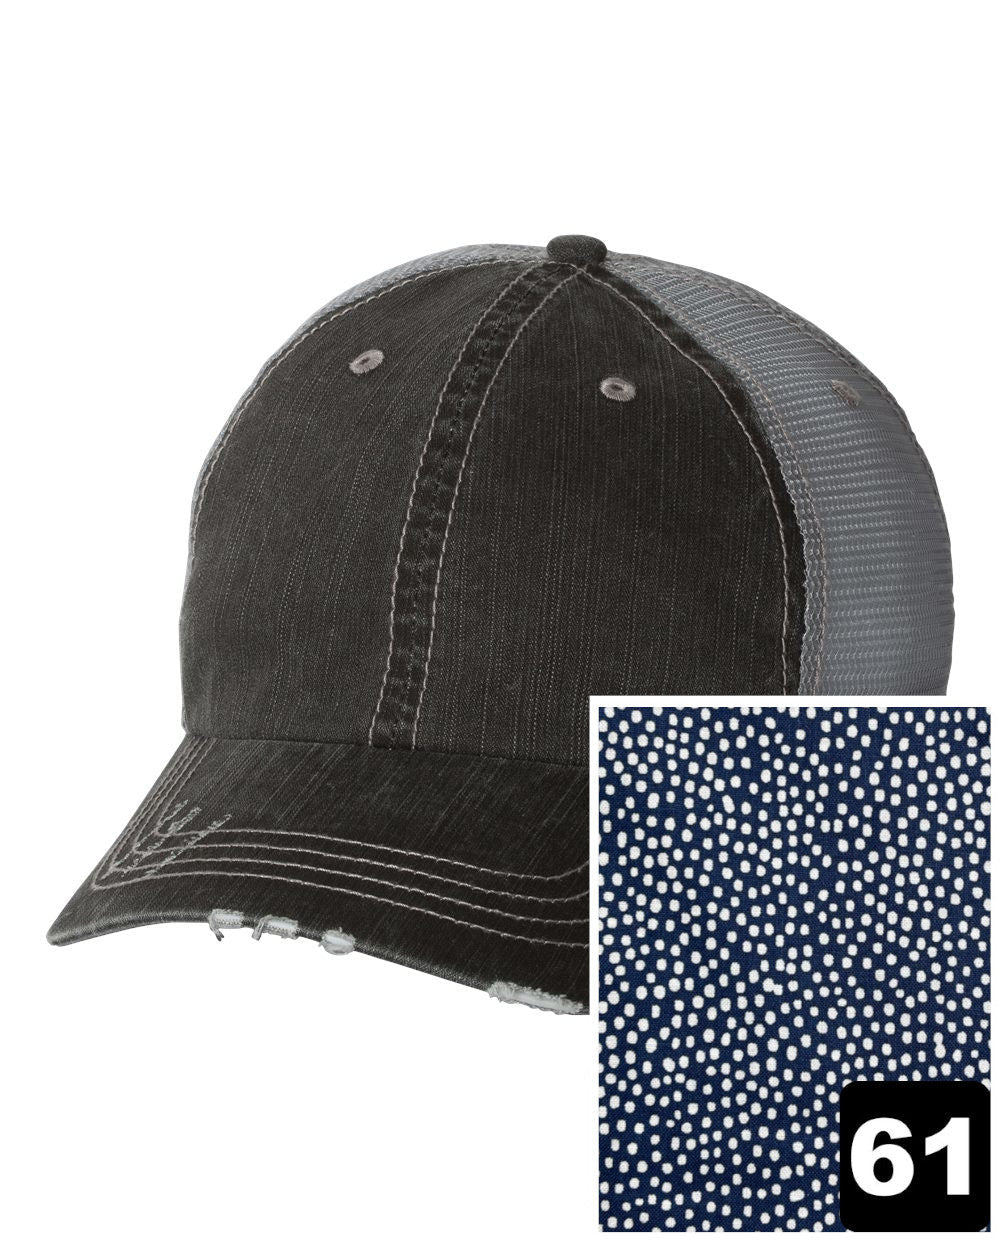 Idaho Hat | Gray Distressed Trucker Cap | Many Fabric Choices